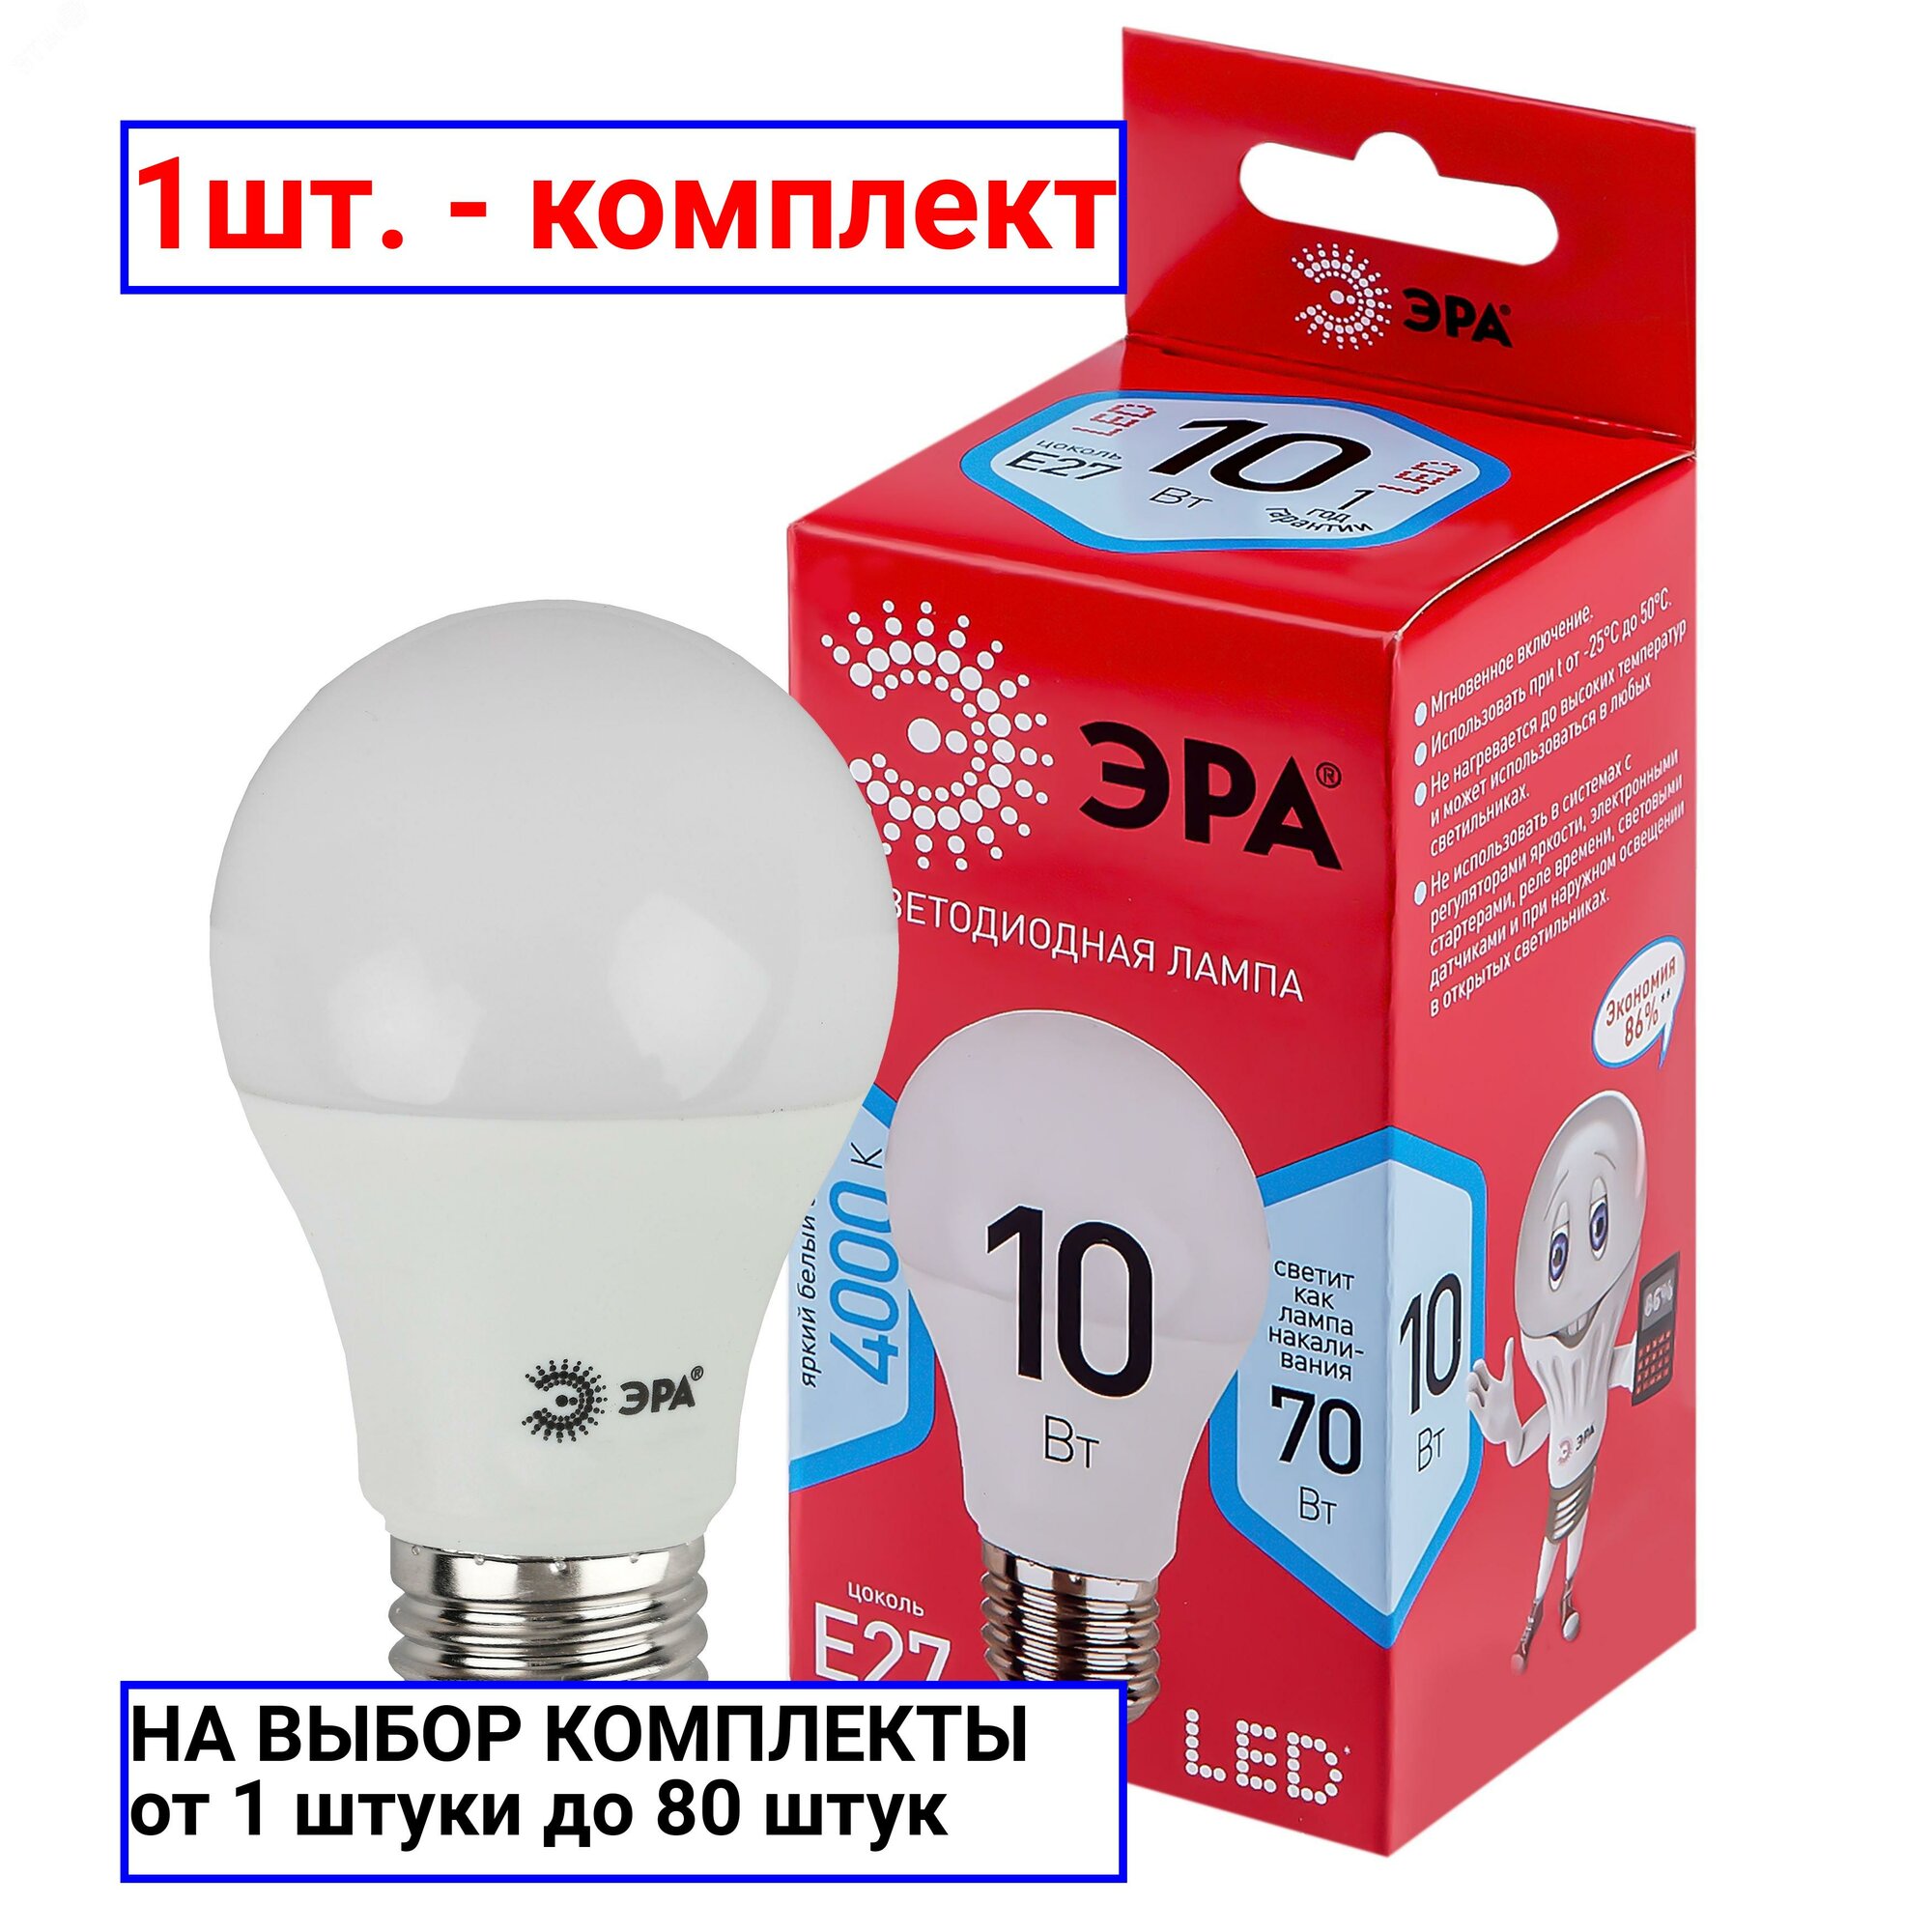 1шт. - Лампа светодиодная 10 Вт груша нейтральный белый свет RED LINE LED A60-10W-840-E27 R Е27 / E27 ЭРА / ЭРА; арт. Б0049635; оригинал / - комплект 1шт